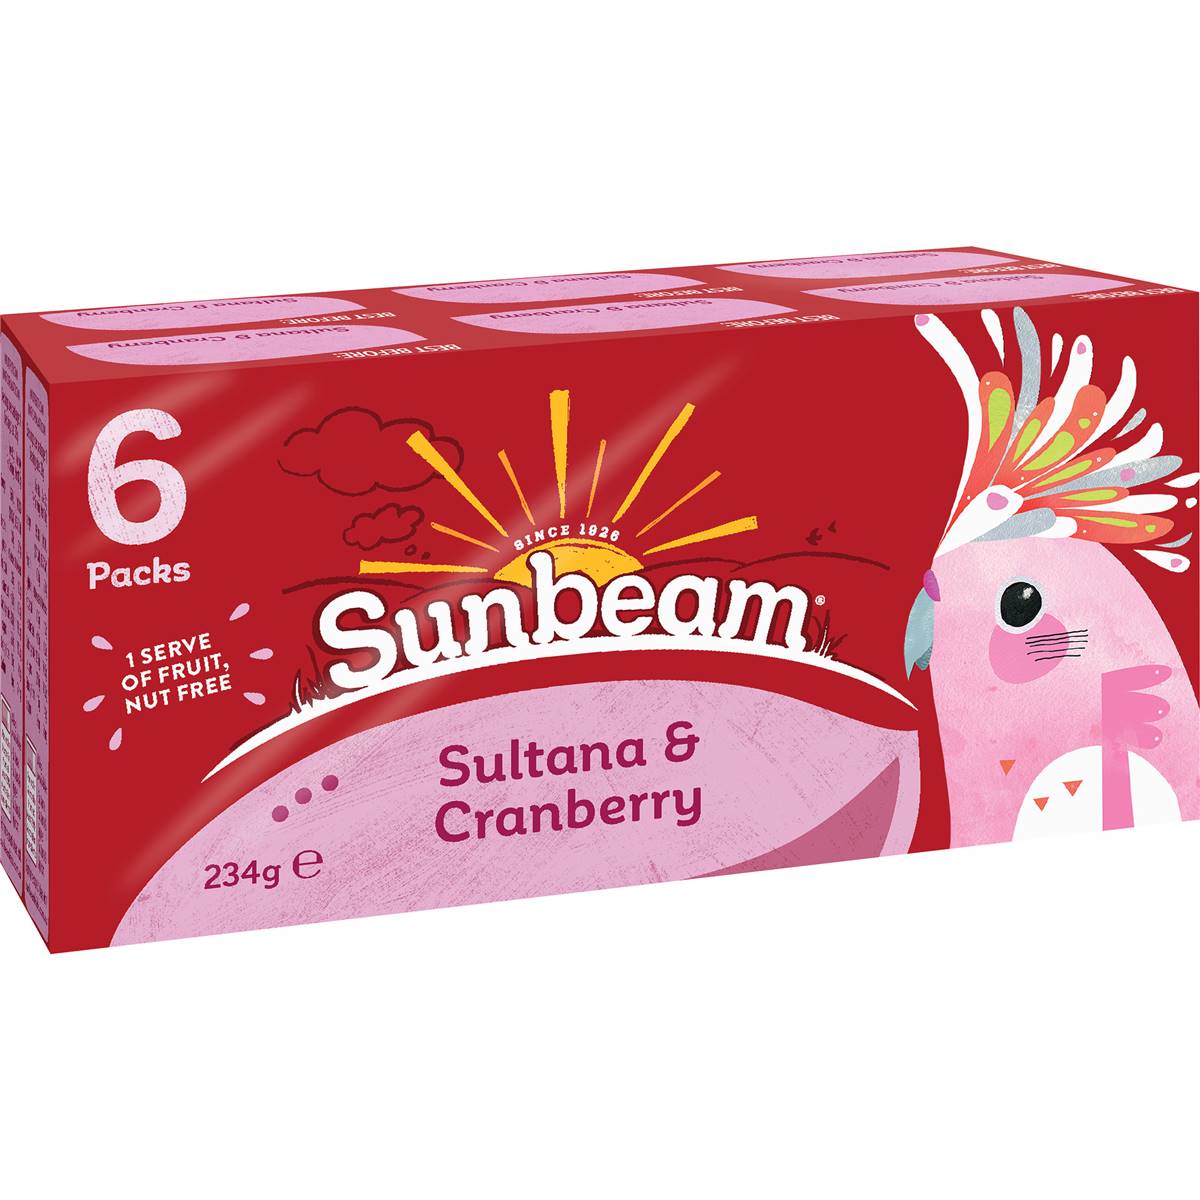 Calories in Sunbeam Sultanas & Cranberry